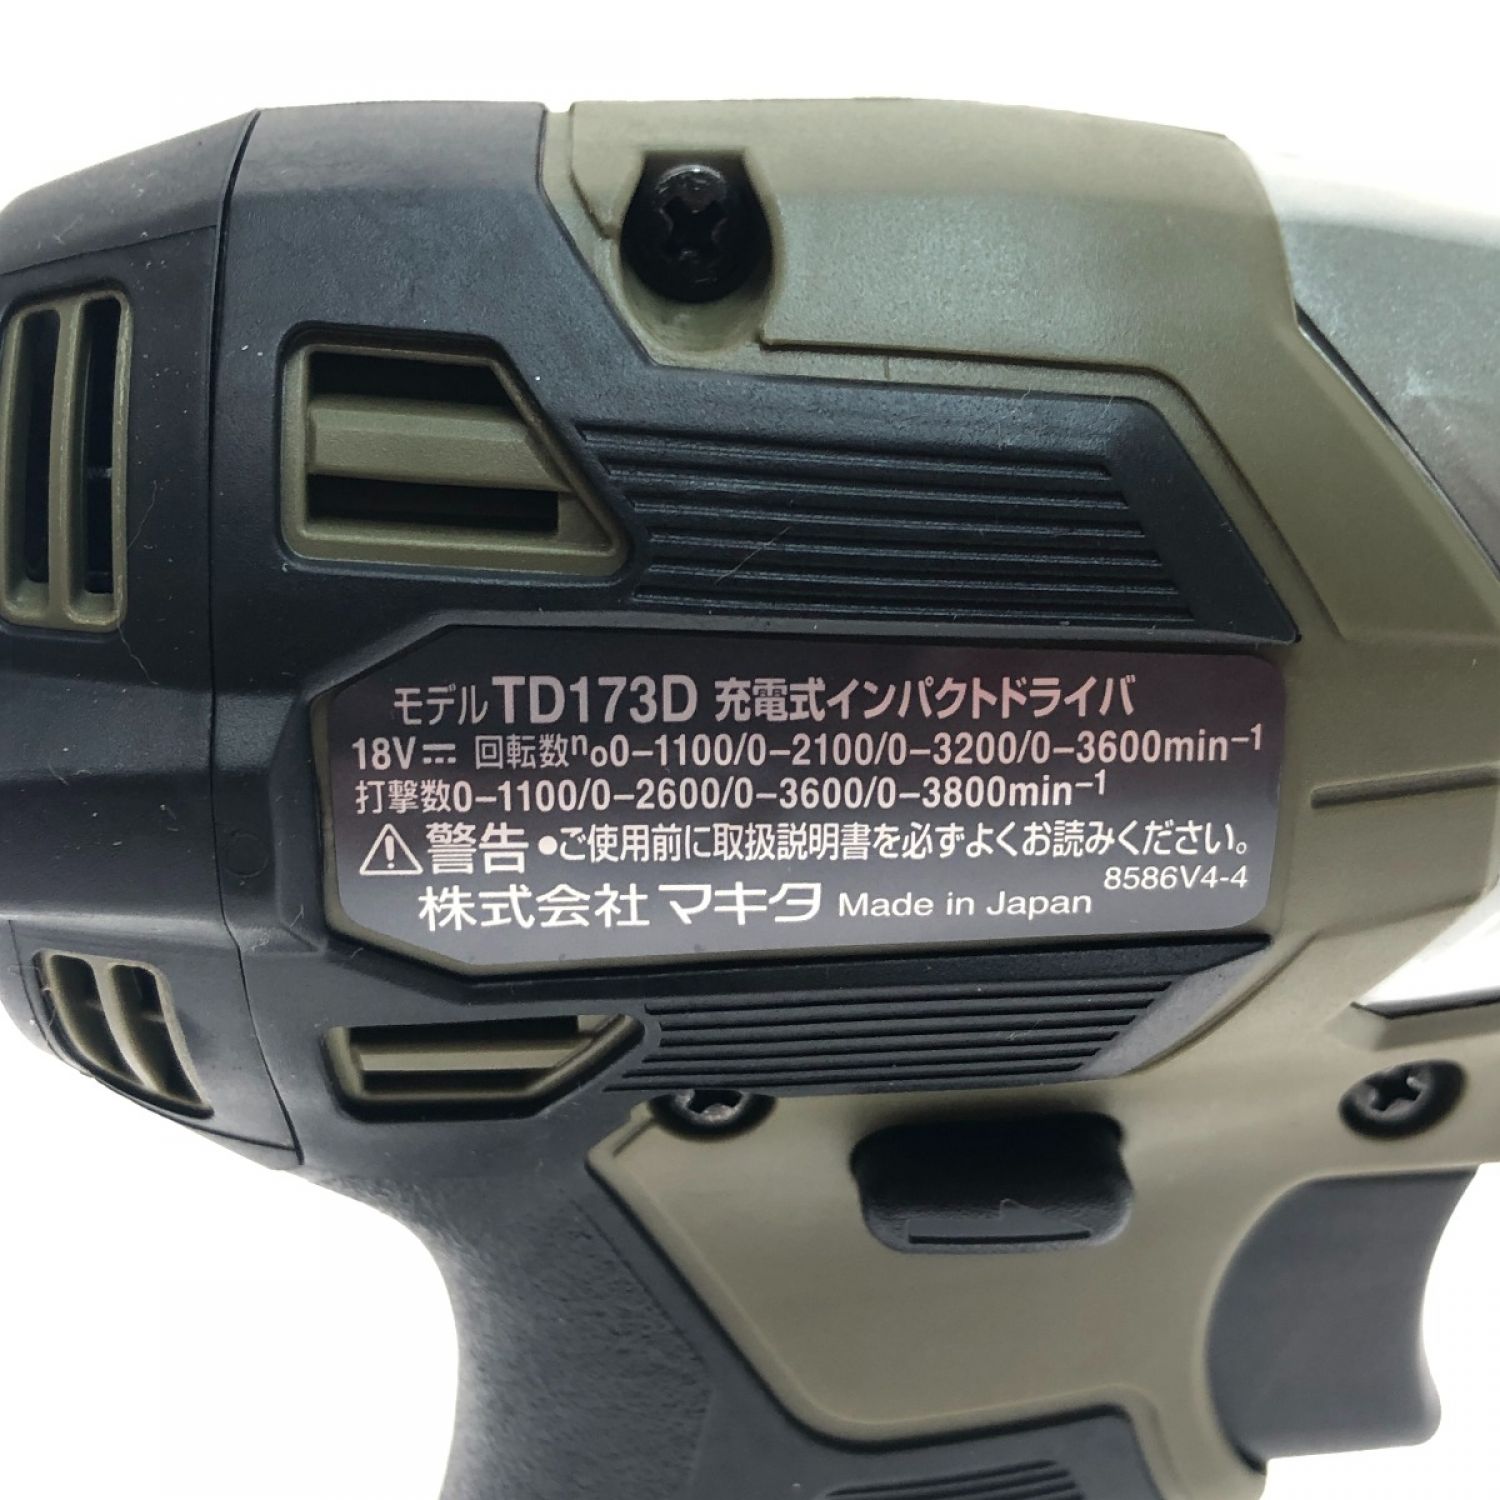 ☆未使用 ケースロゴ傷アリ☆makita マキタ 18V 充電式インパクトドライバ TD173DRGXO オリーブ バッテリー2個(6.0Ah) 充電器 68170